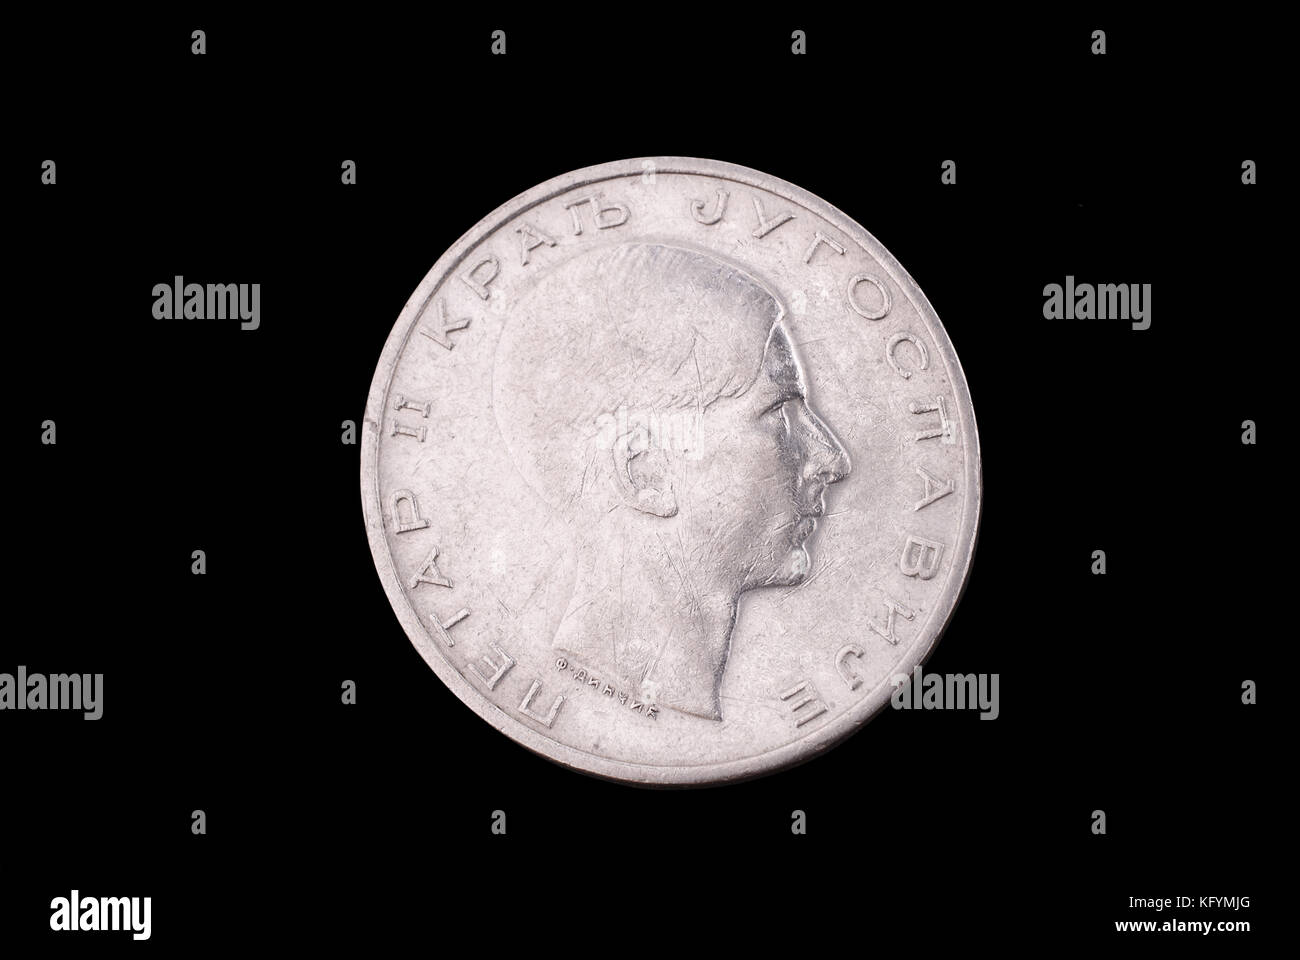 Königreich Jugoslawien alte Silbermünze (König Petr ii, 50 Dinars, 1938). Vorderseite (der Münze). Stockfoto